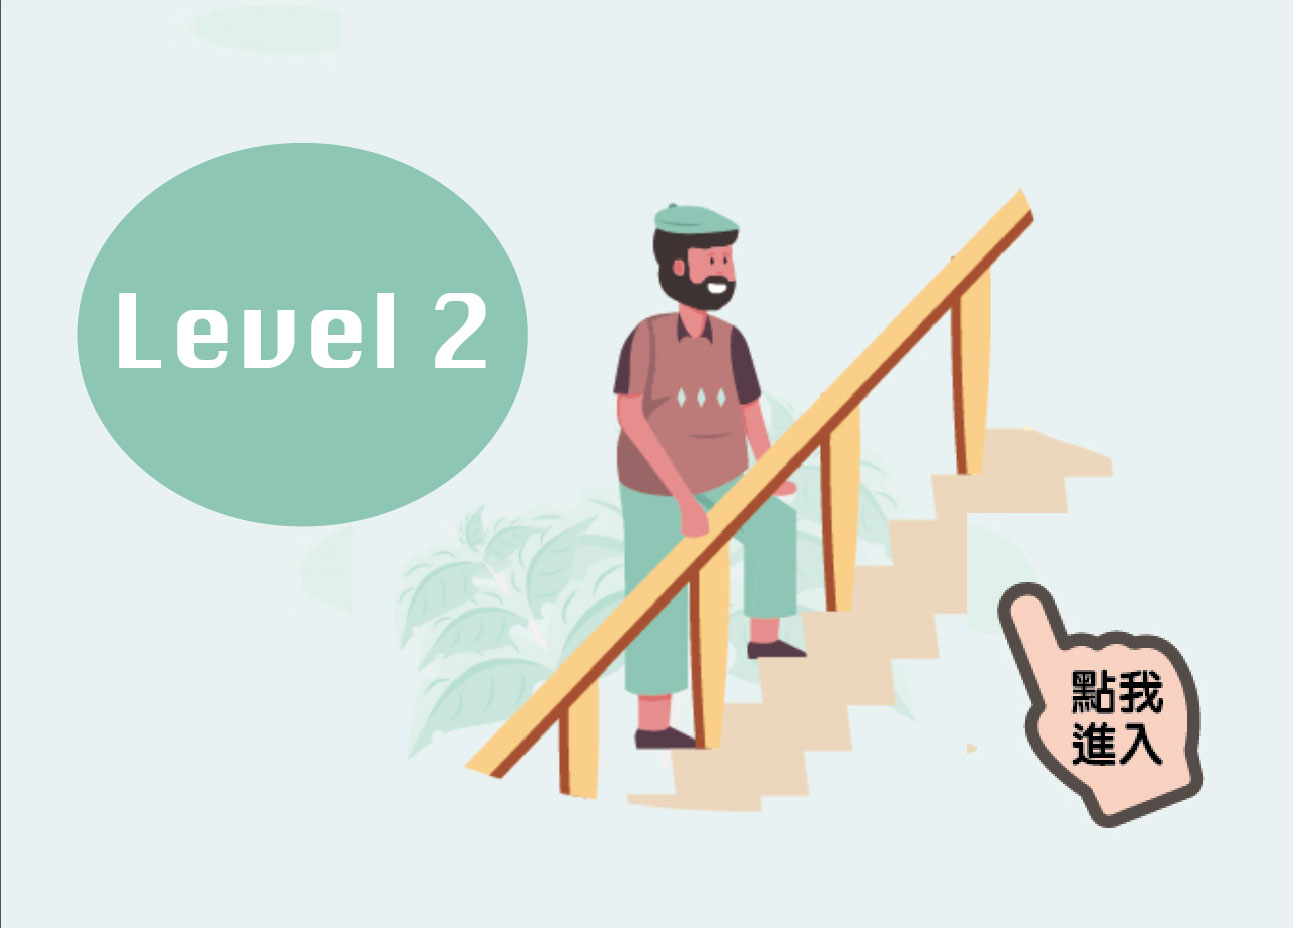 LEVEL 2 可以平坦地面行走，但不平坦的地面相當吃力，爬樓梯需要扶手或支持物